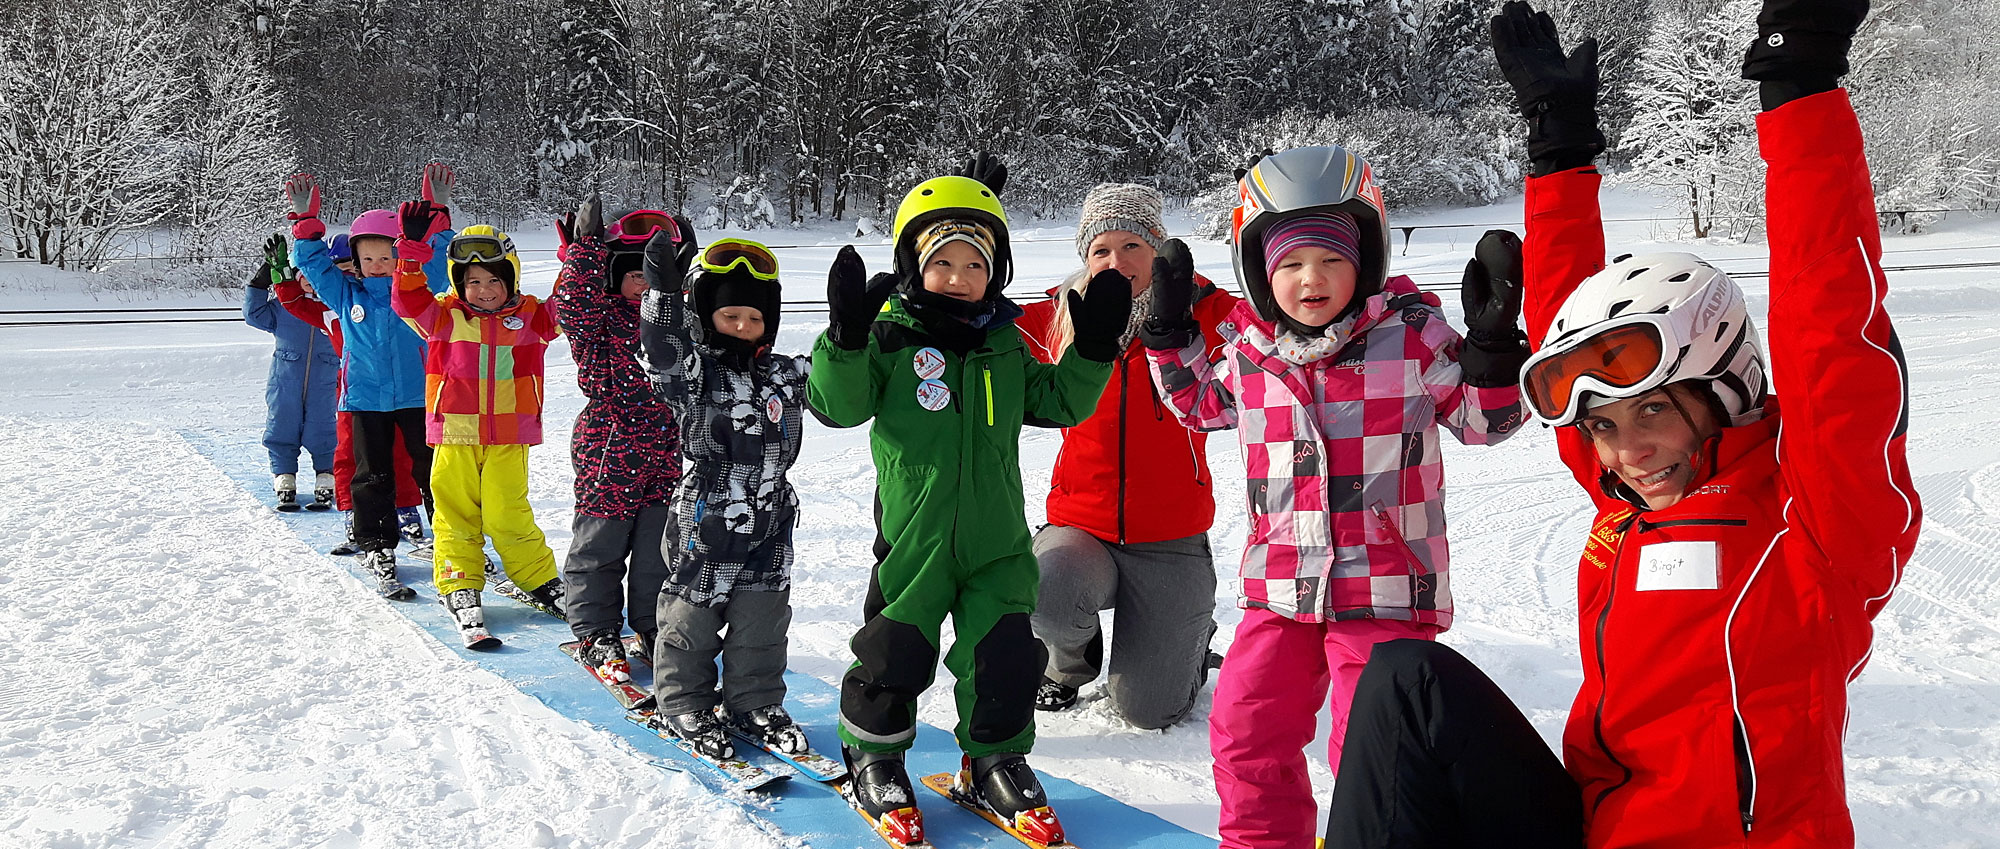 Kinderskischule - Skifahren mit der ganzen Familie in Bayern